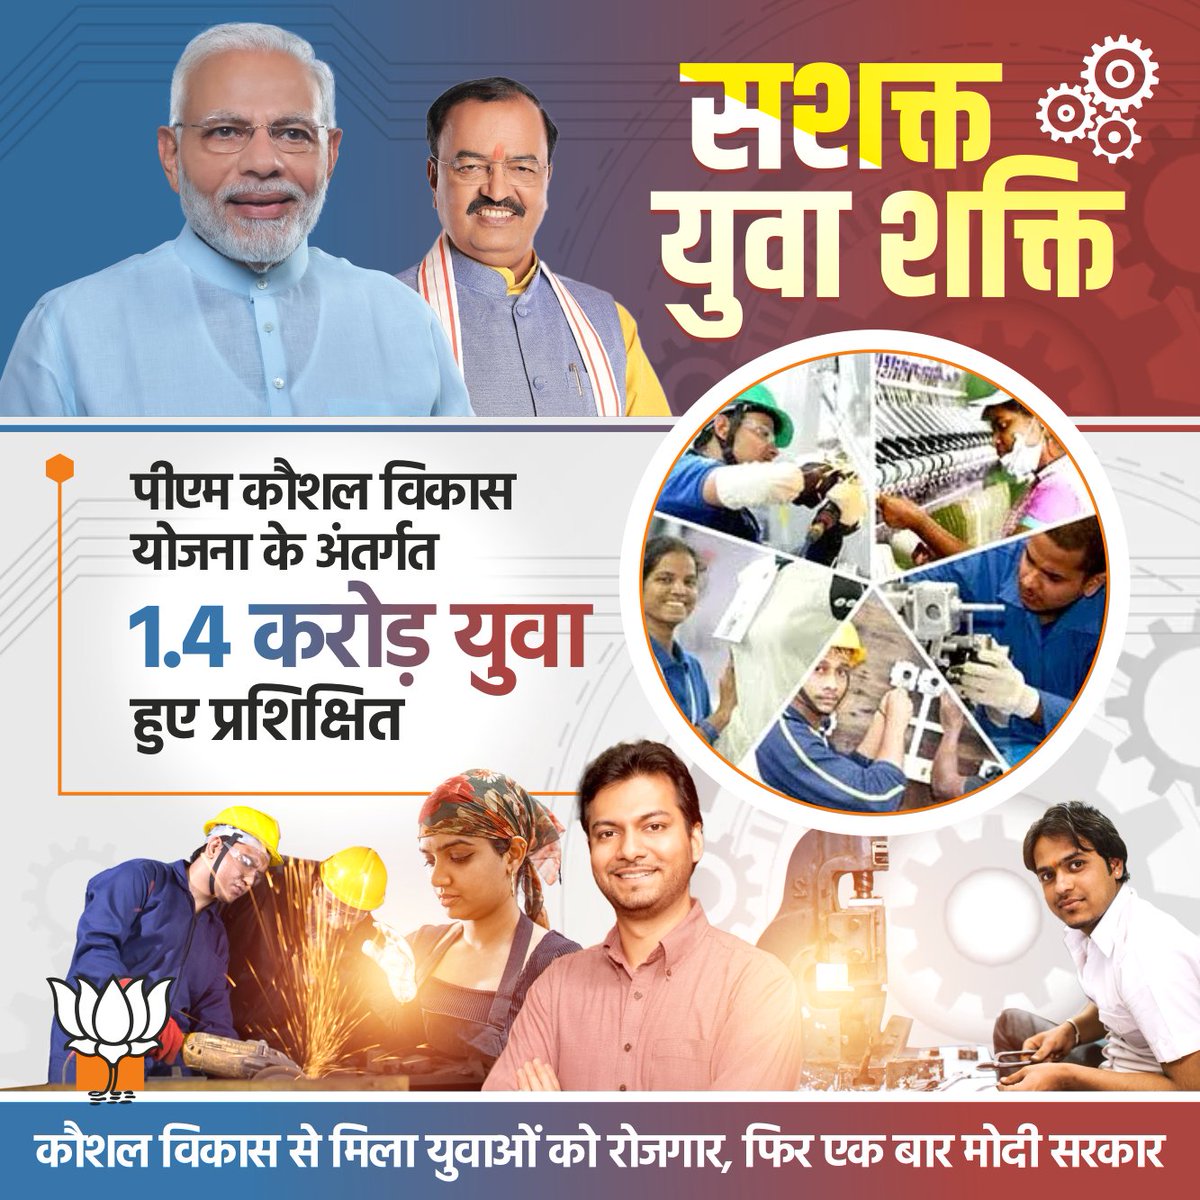 कौशल विकास से मिला युवाओं को रोजगार... @narendramodi #SkillIndia #StartupIndia